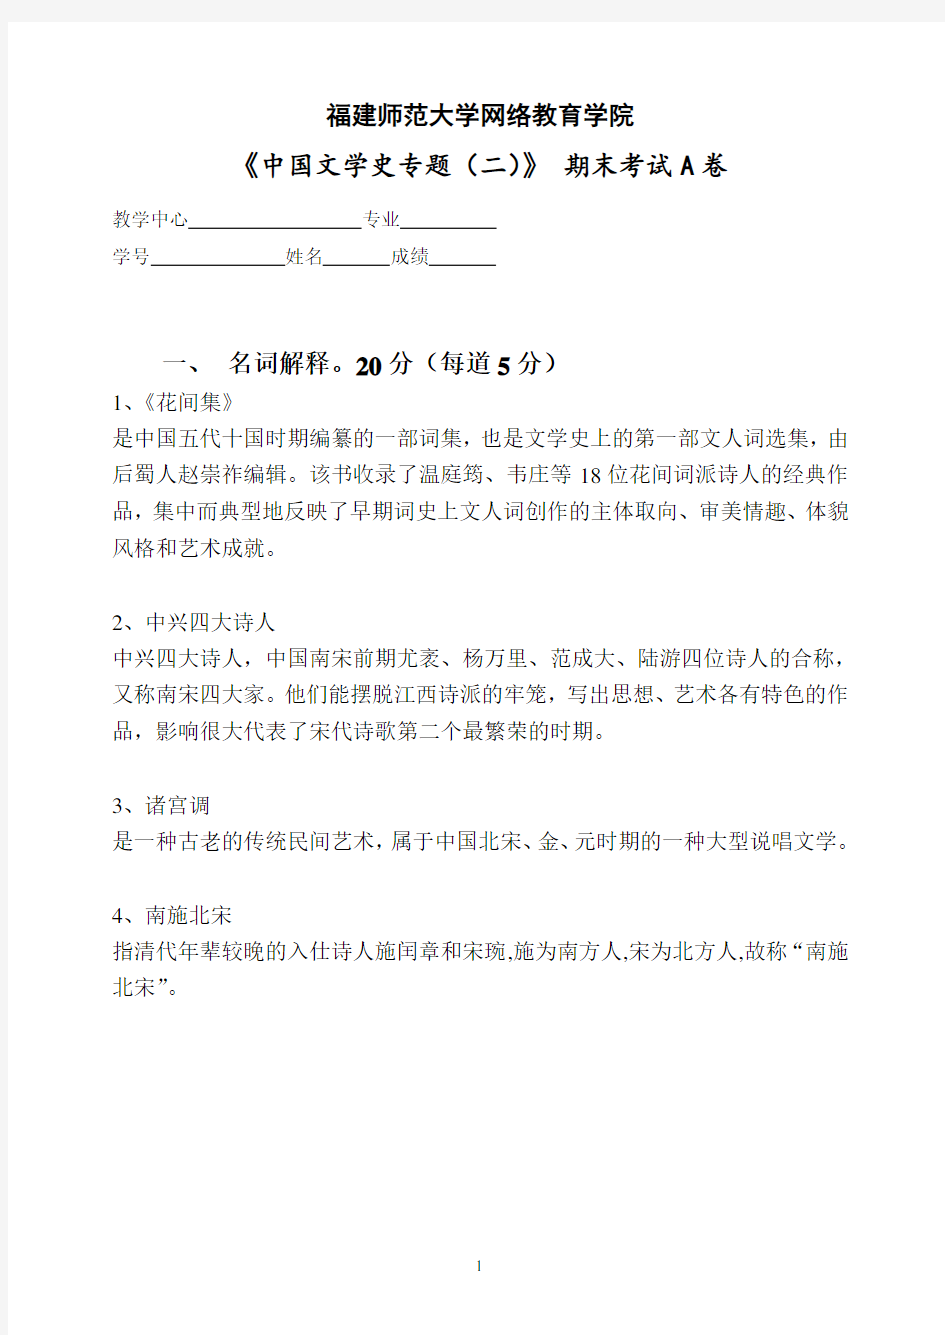 福建师范大学19年3月课程考试《中国文学史专题(二)》作业考核参考答案